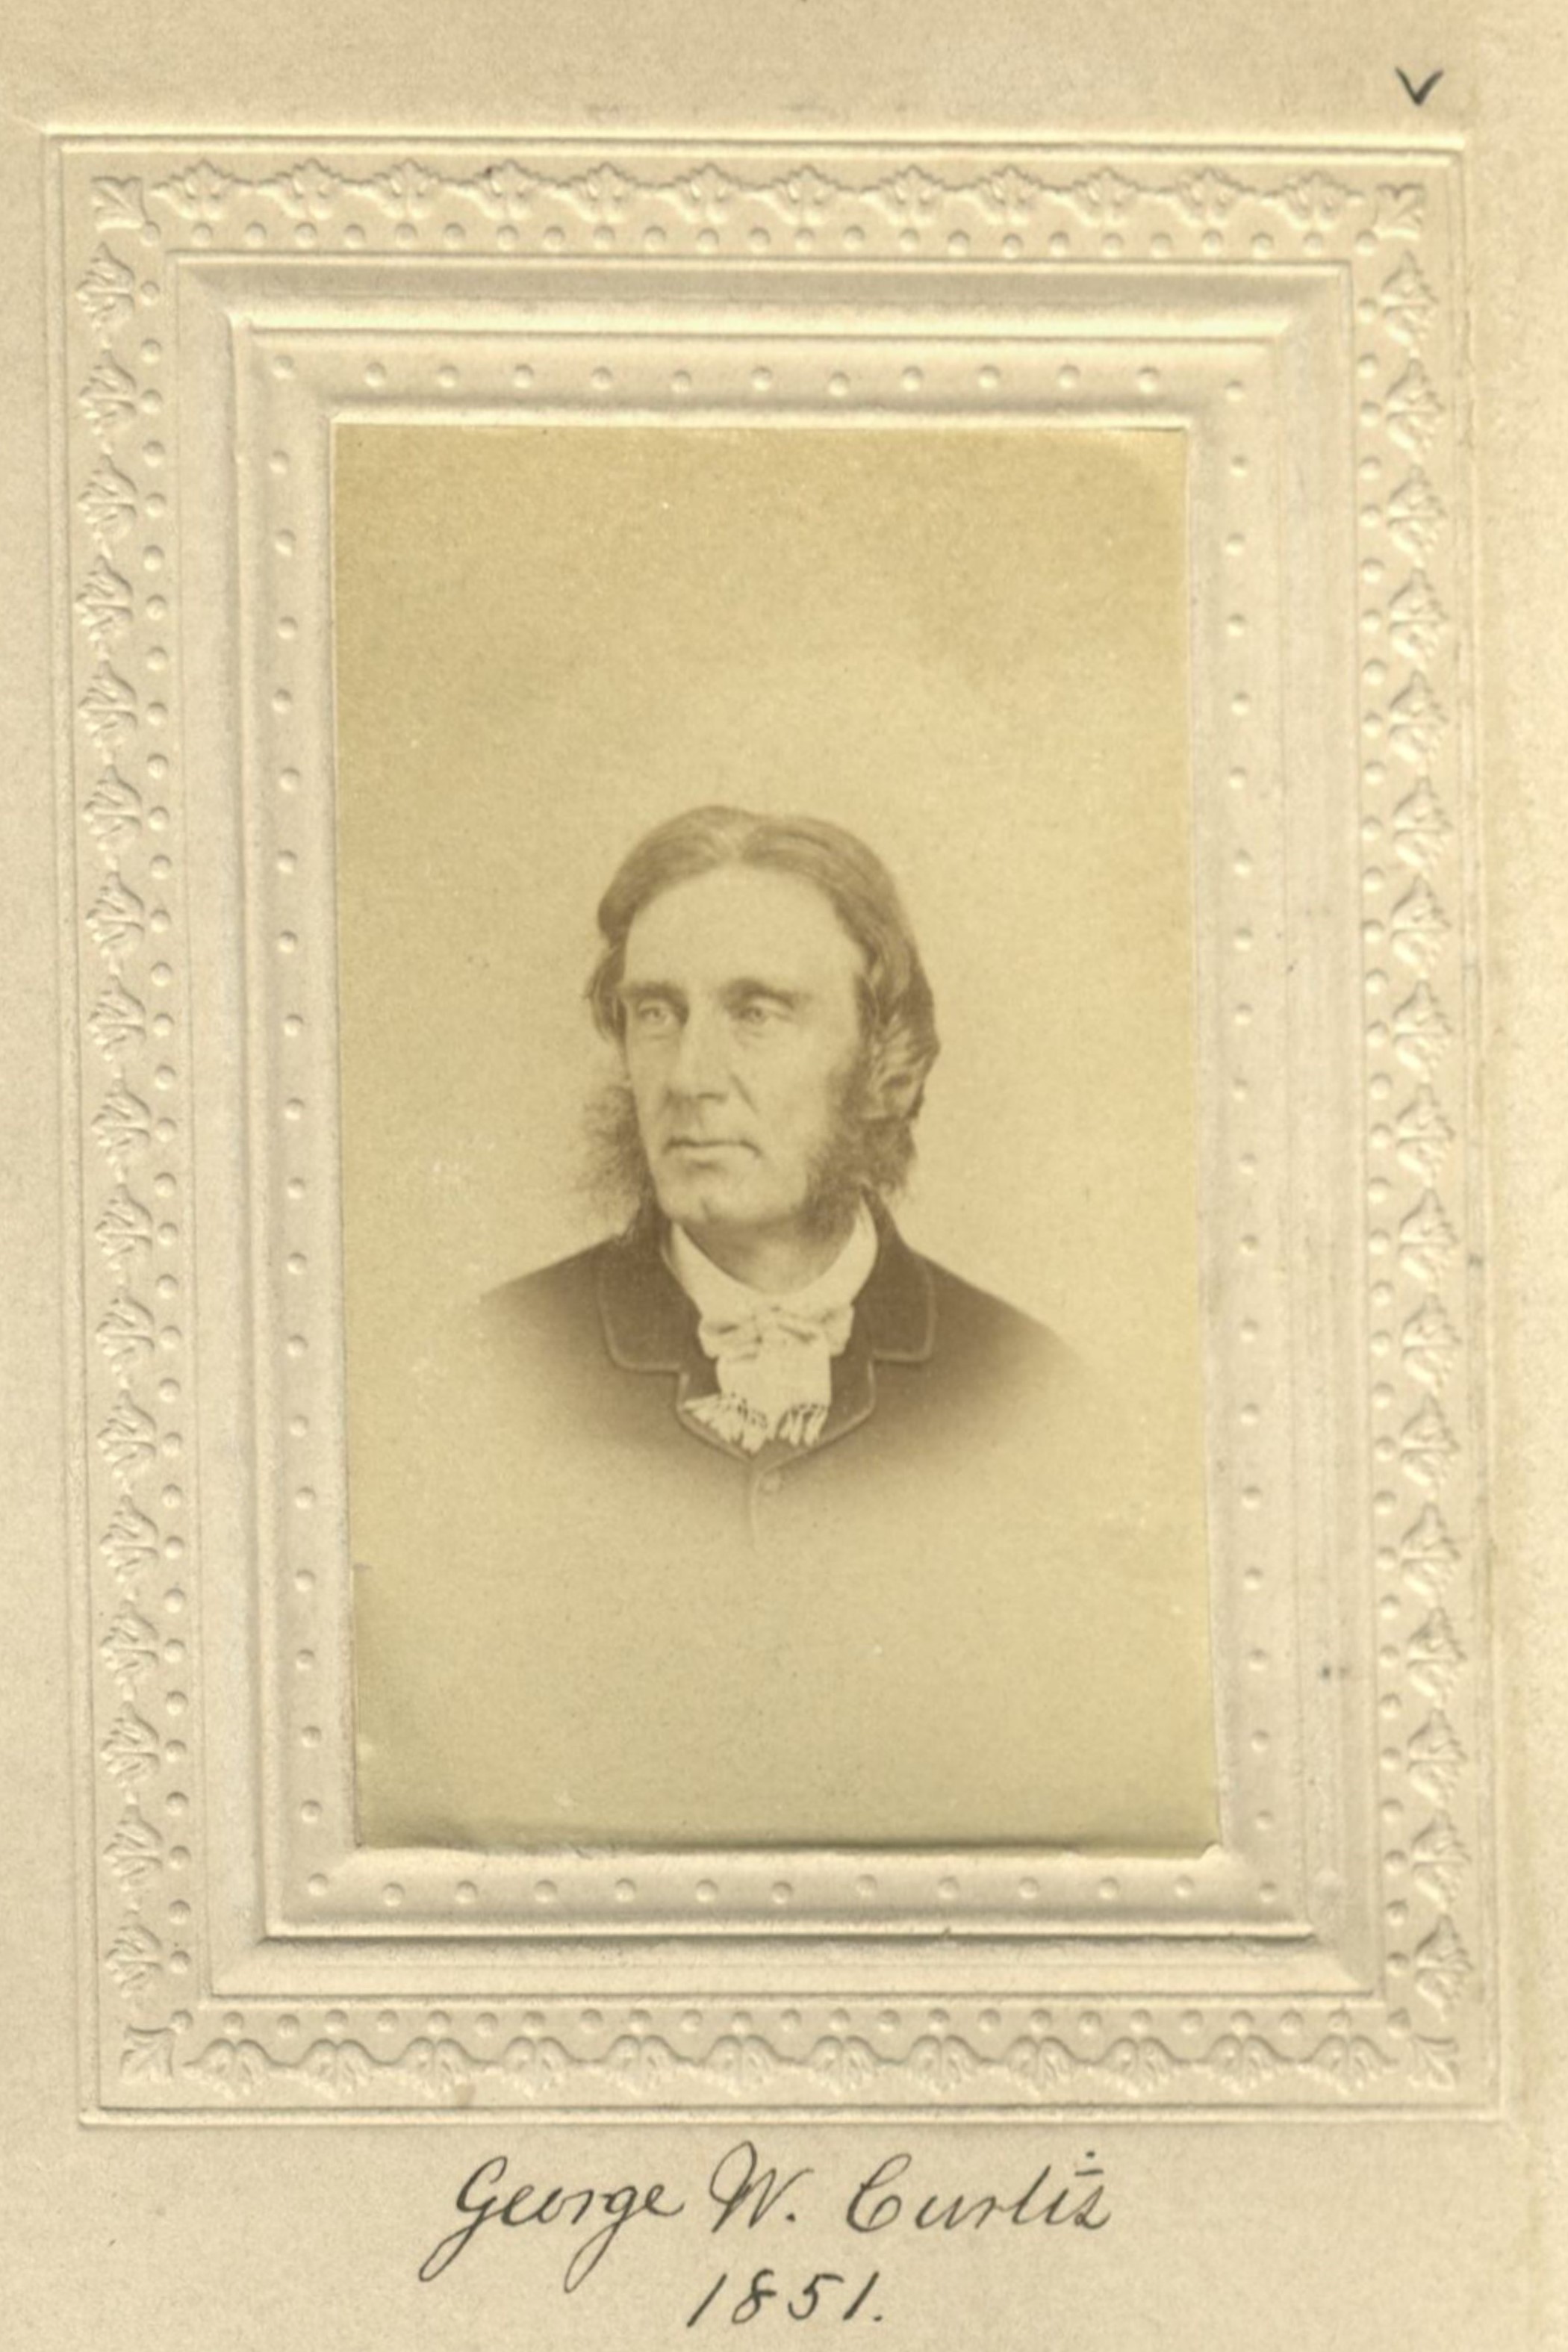 Member portrait of George William Curtis